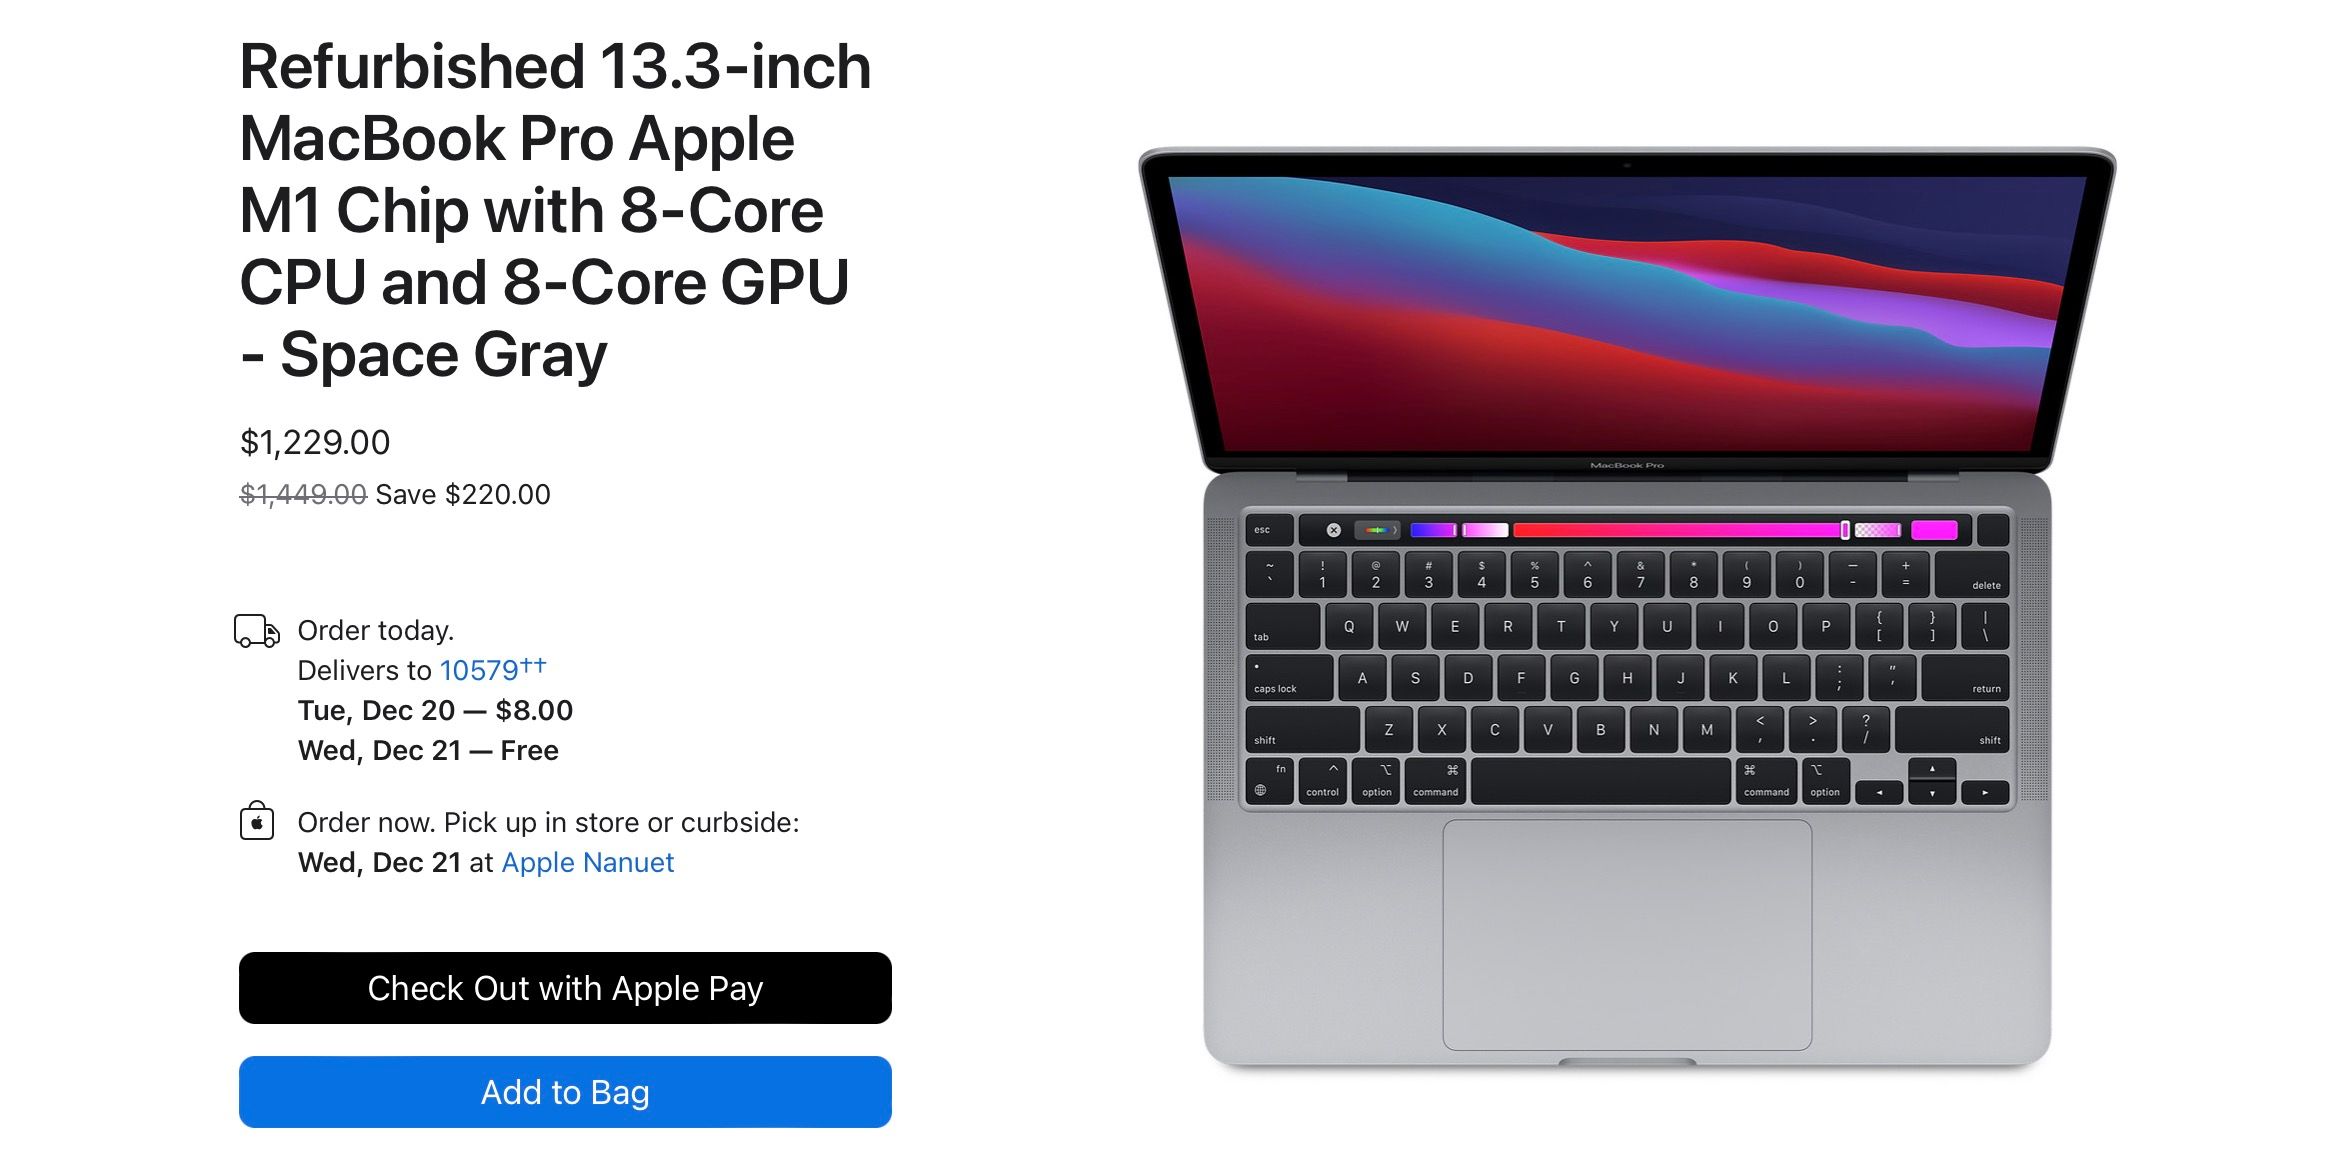 Refurbished MacBook Pro from Apple's website